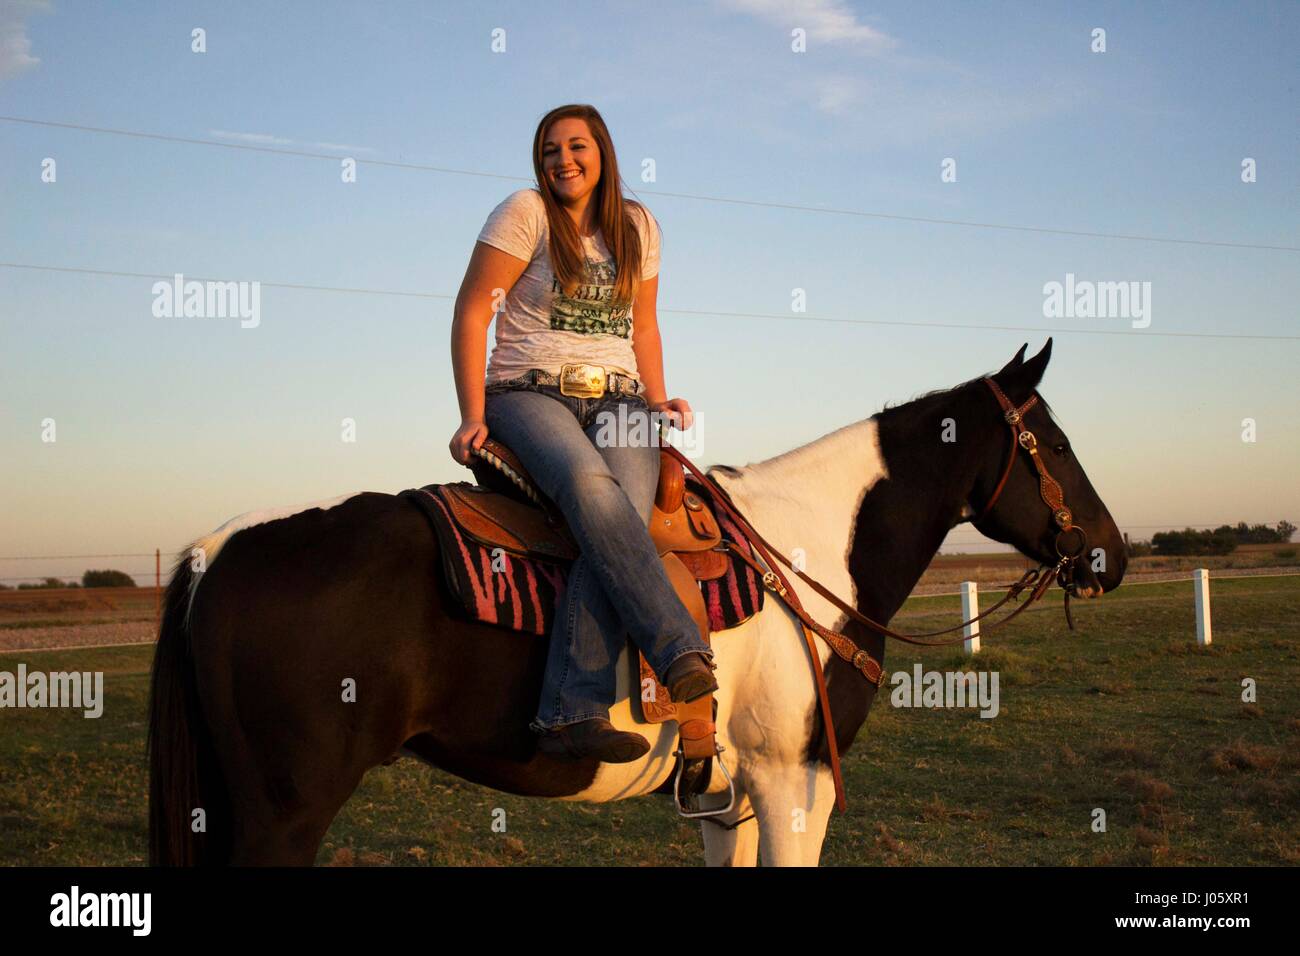 La fille selle un cheval photo stock. Image du pré, zone - 55604398